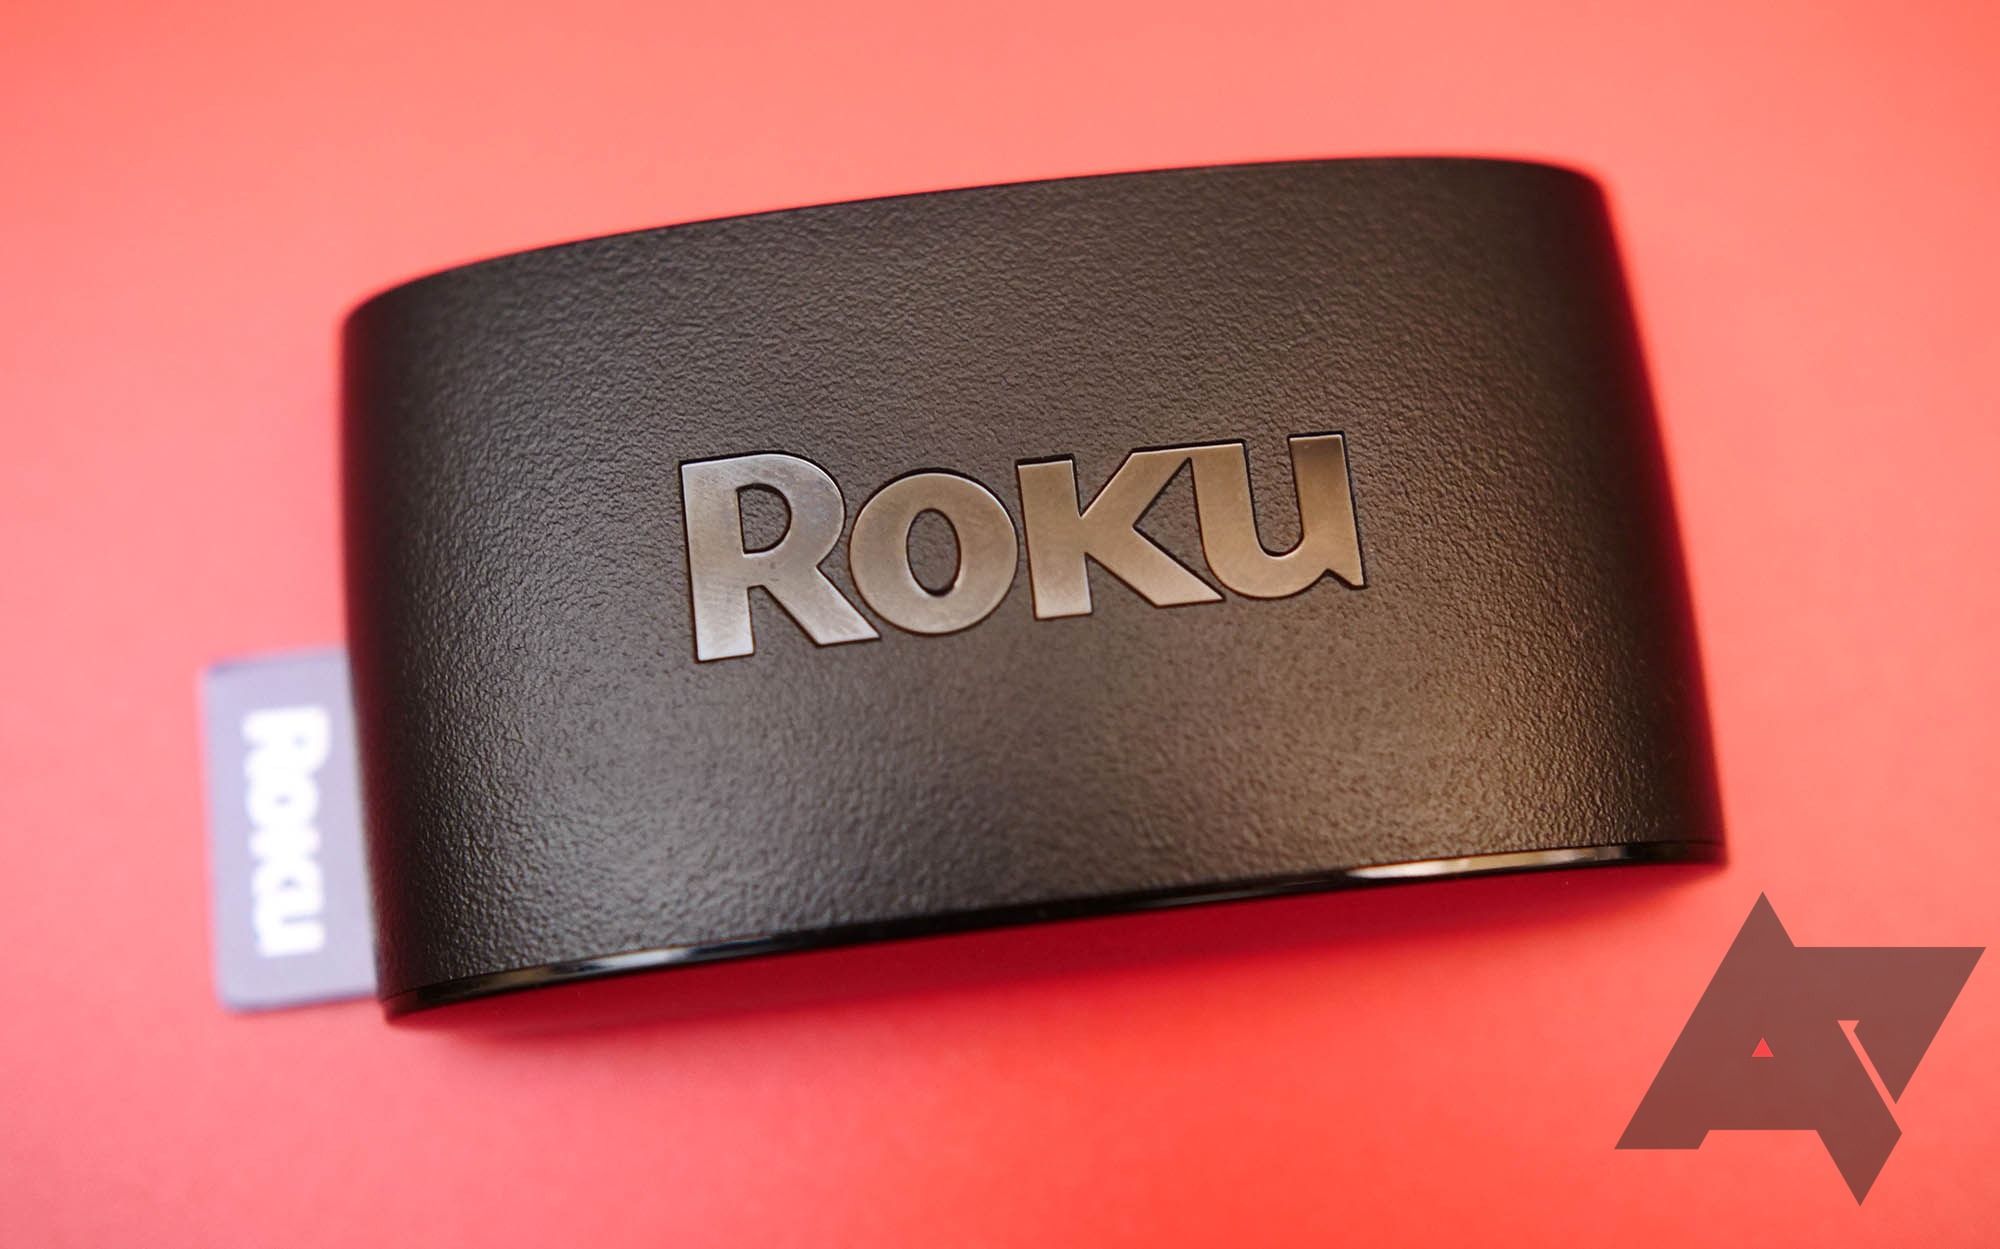 Um dispositivo Roku preto em um fundo vermelho com o logotipo do Android Police no canto inferior direito